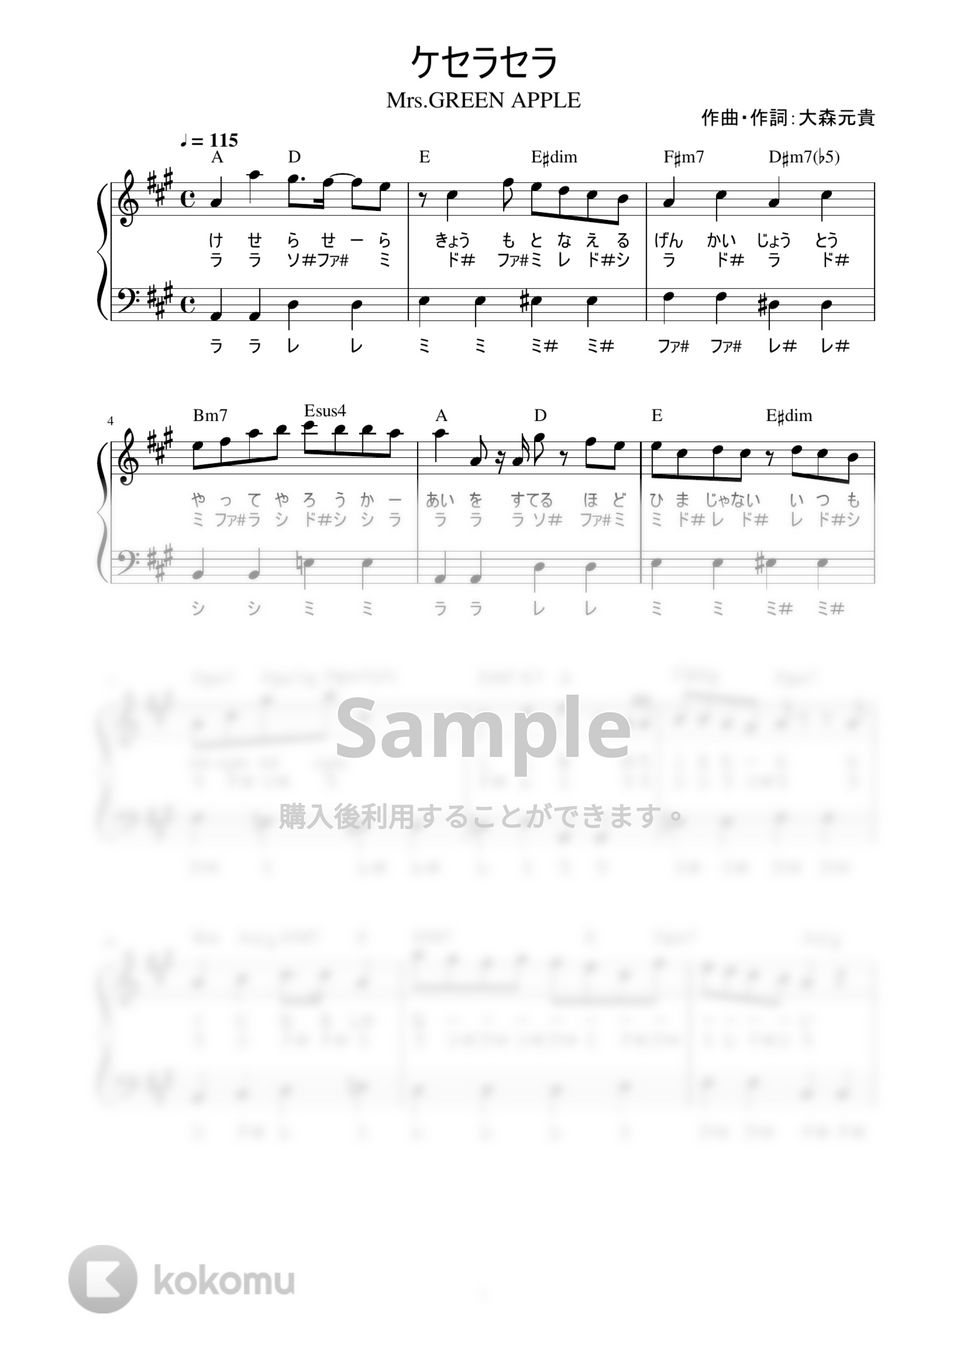 Mrs.GREEN APPLE - ケセラセラ (かんたん / 歌詞付き / ドレミ付き / 初心者) by piano.tokyo